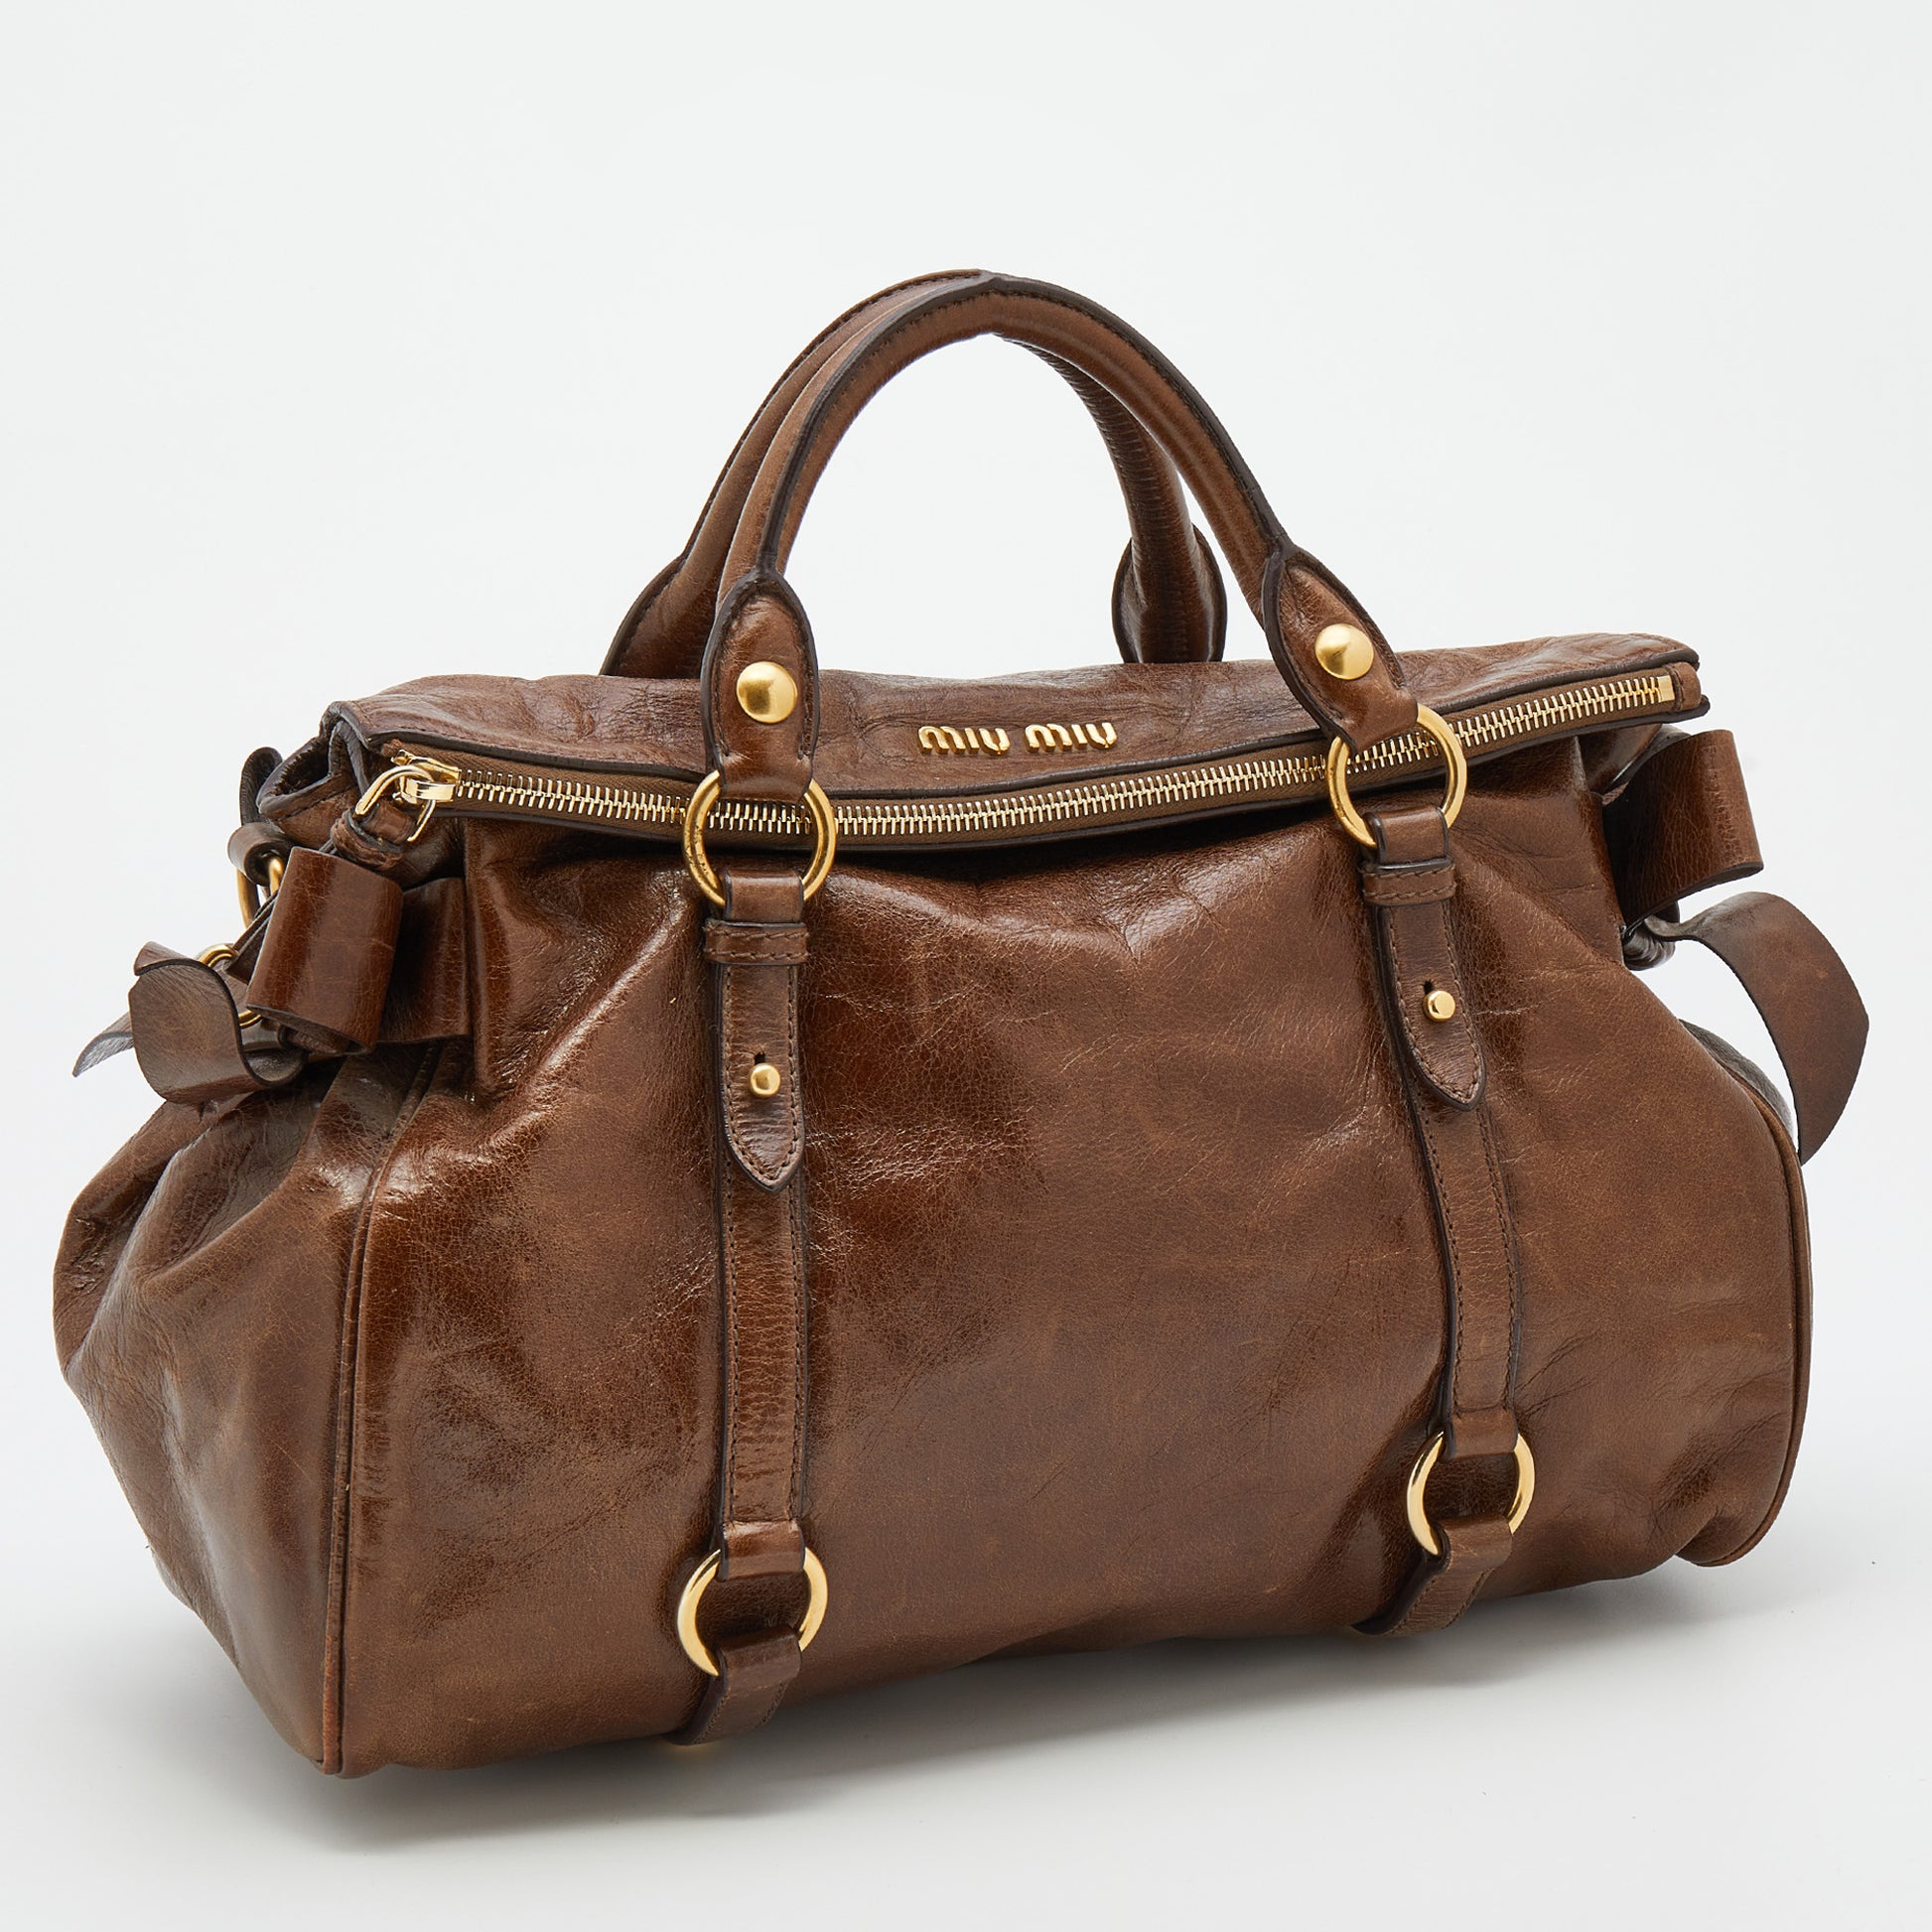 MIU MIU Vitello Lux Medium Bow Bag 111498